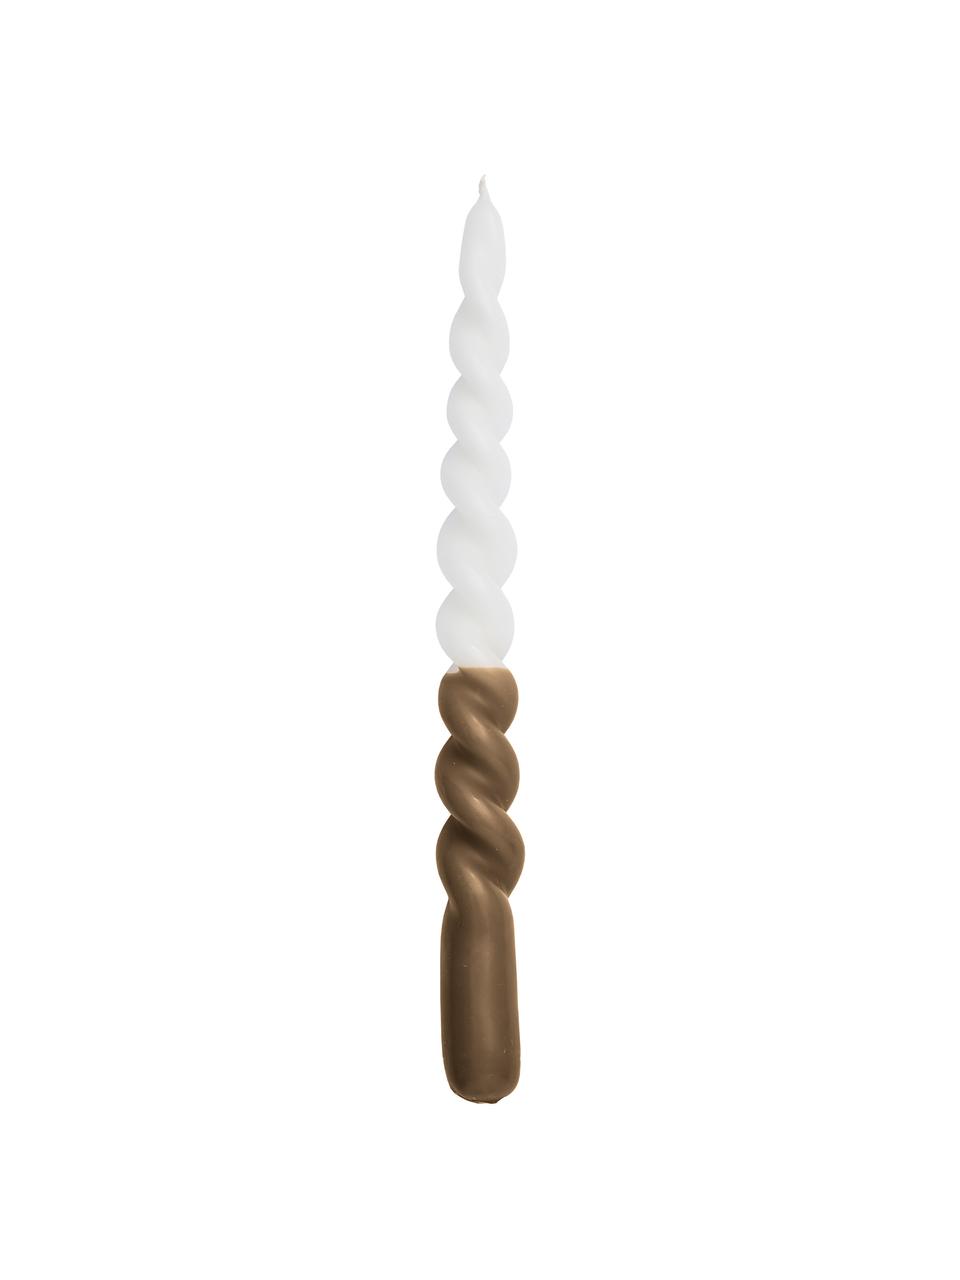 Dlhá sviečka Twister, 2 ks, Parafínový vosk, Biela, hnedá, Ø 2 x V 25 cm